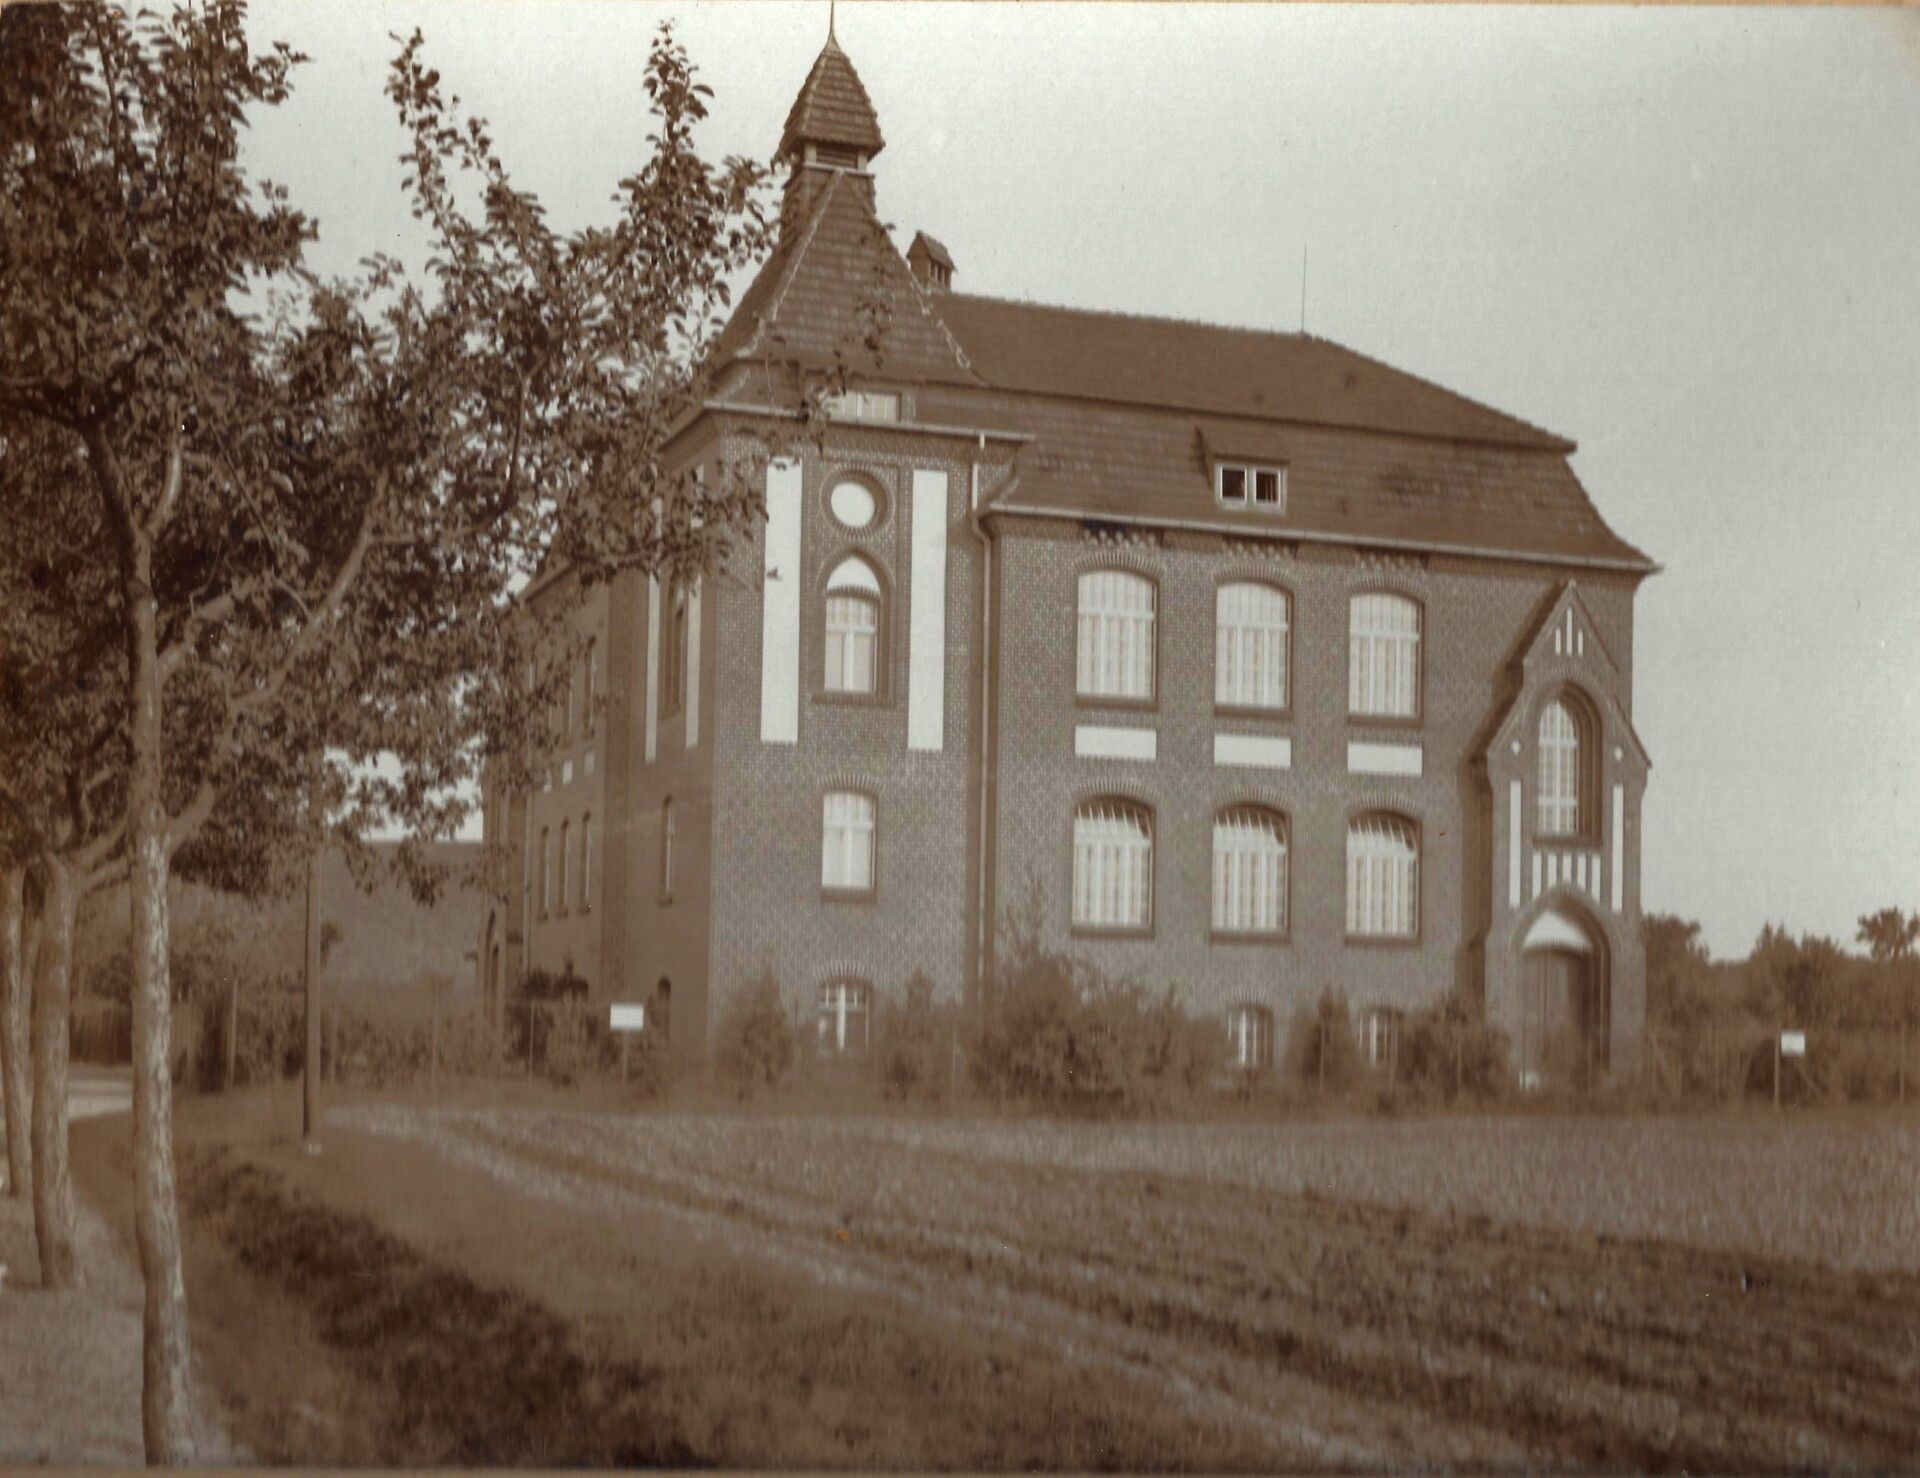 Neue Schule - Bahnhofstraße 1 - 1913
(aus der Sammlung des Vereins Historisches Dorf Dahalewitz)